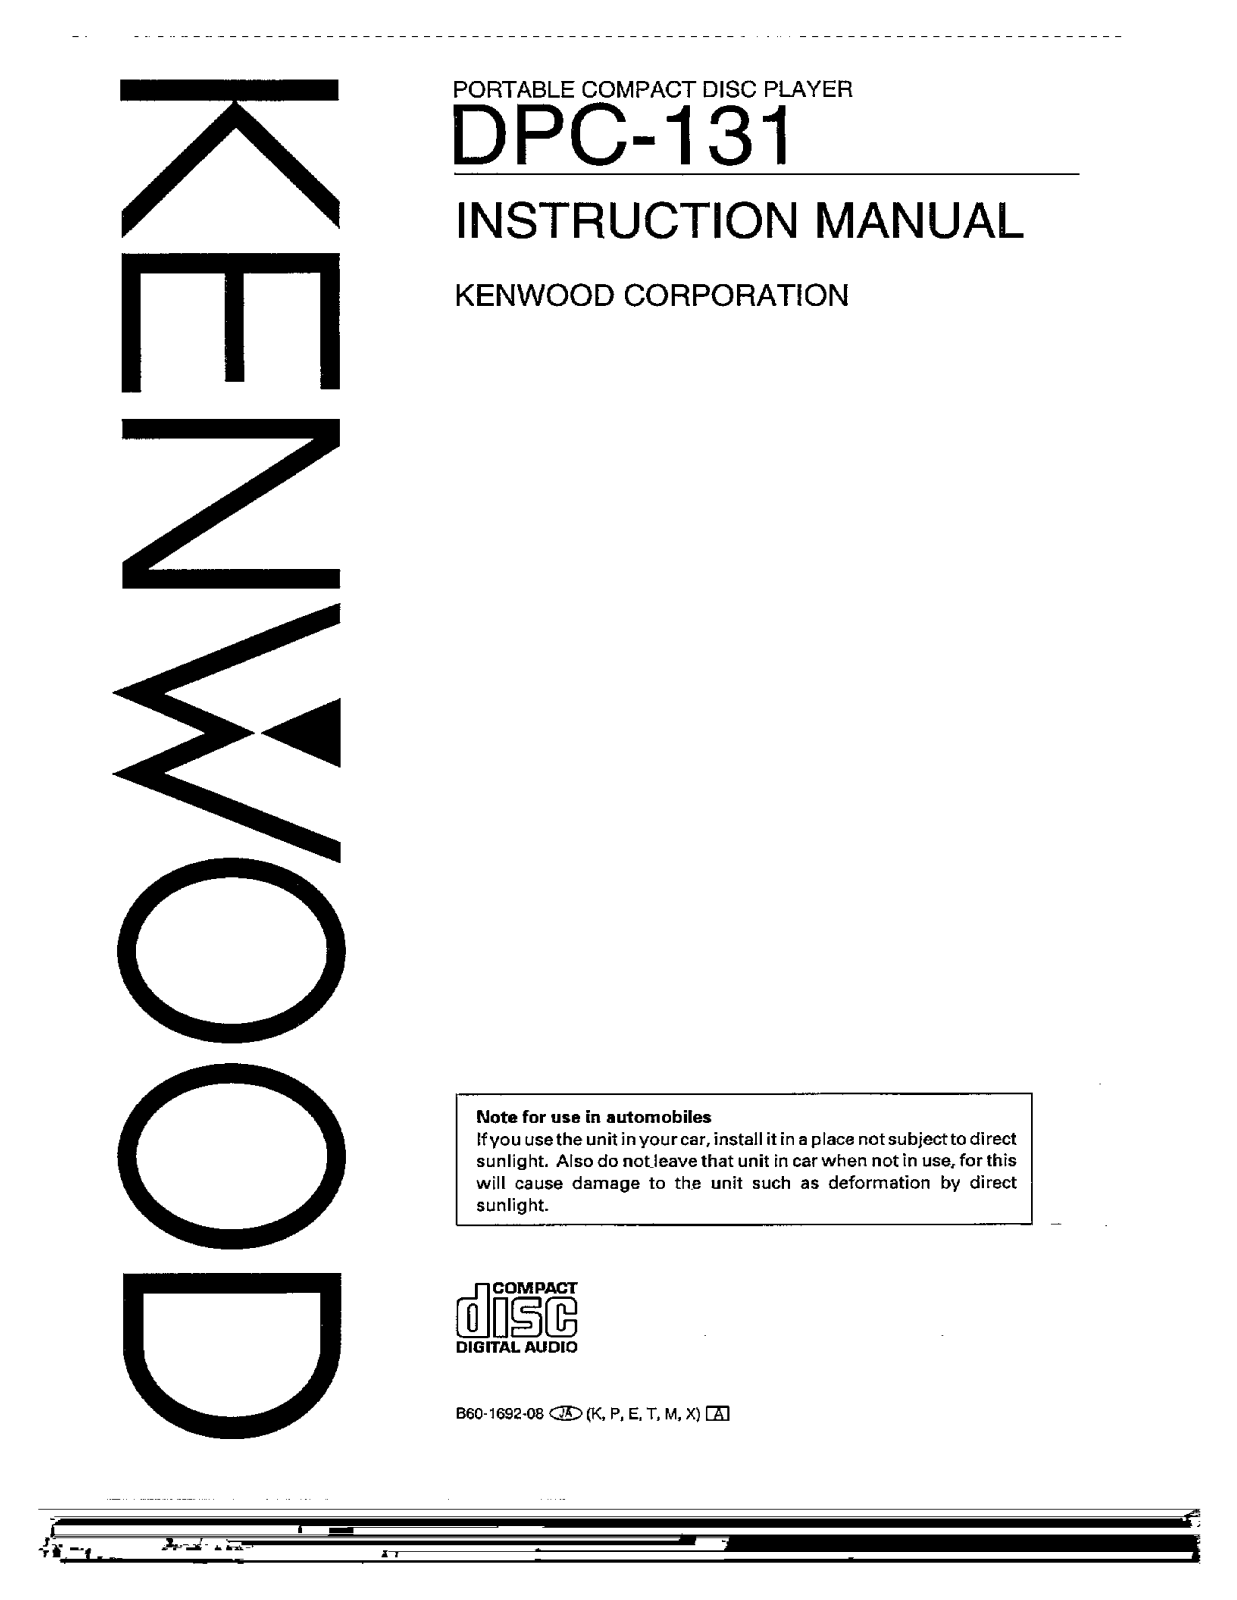 Kenwood DPC-131 Owner's Manual